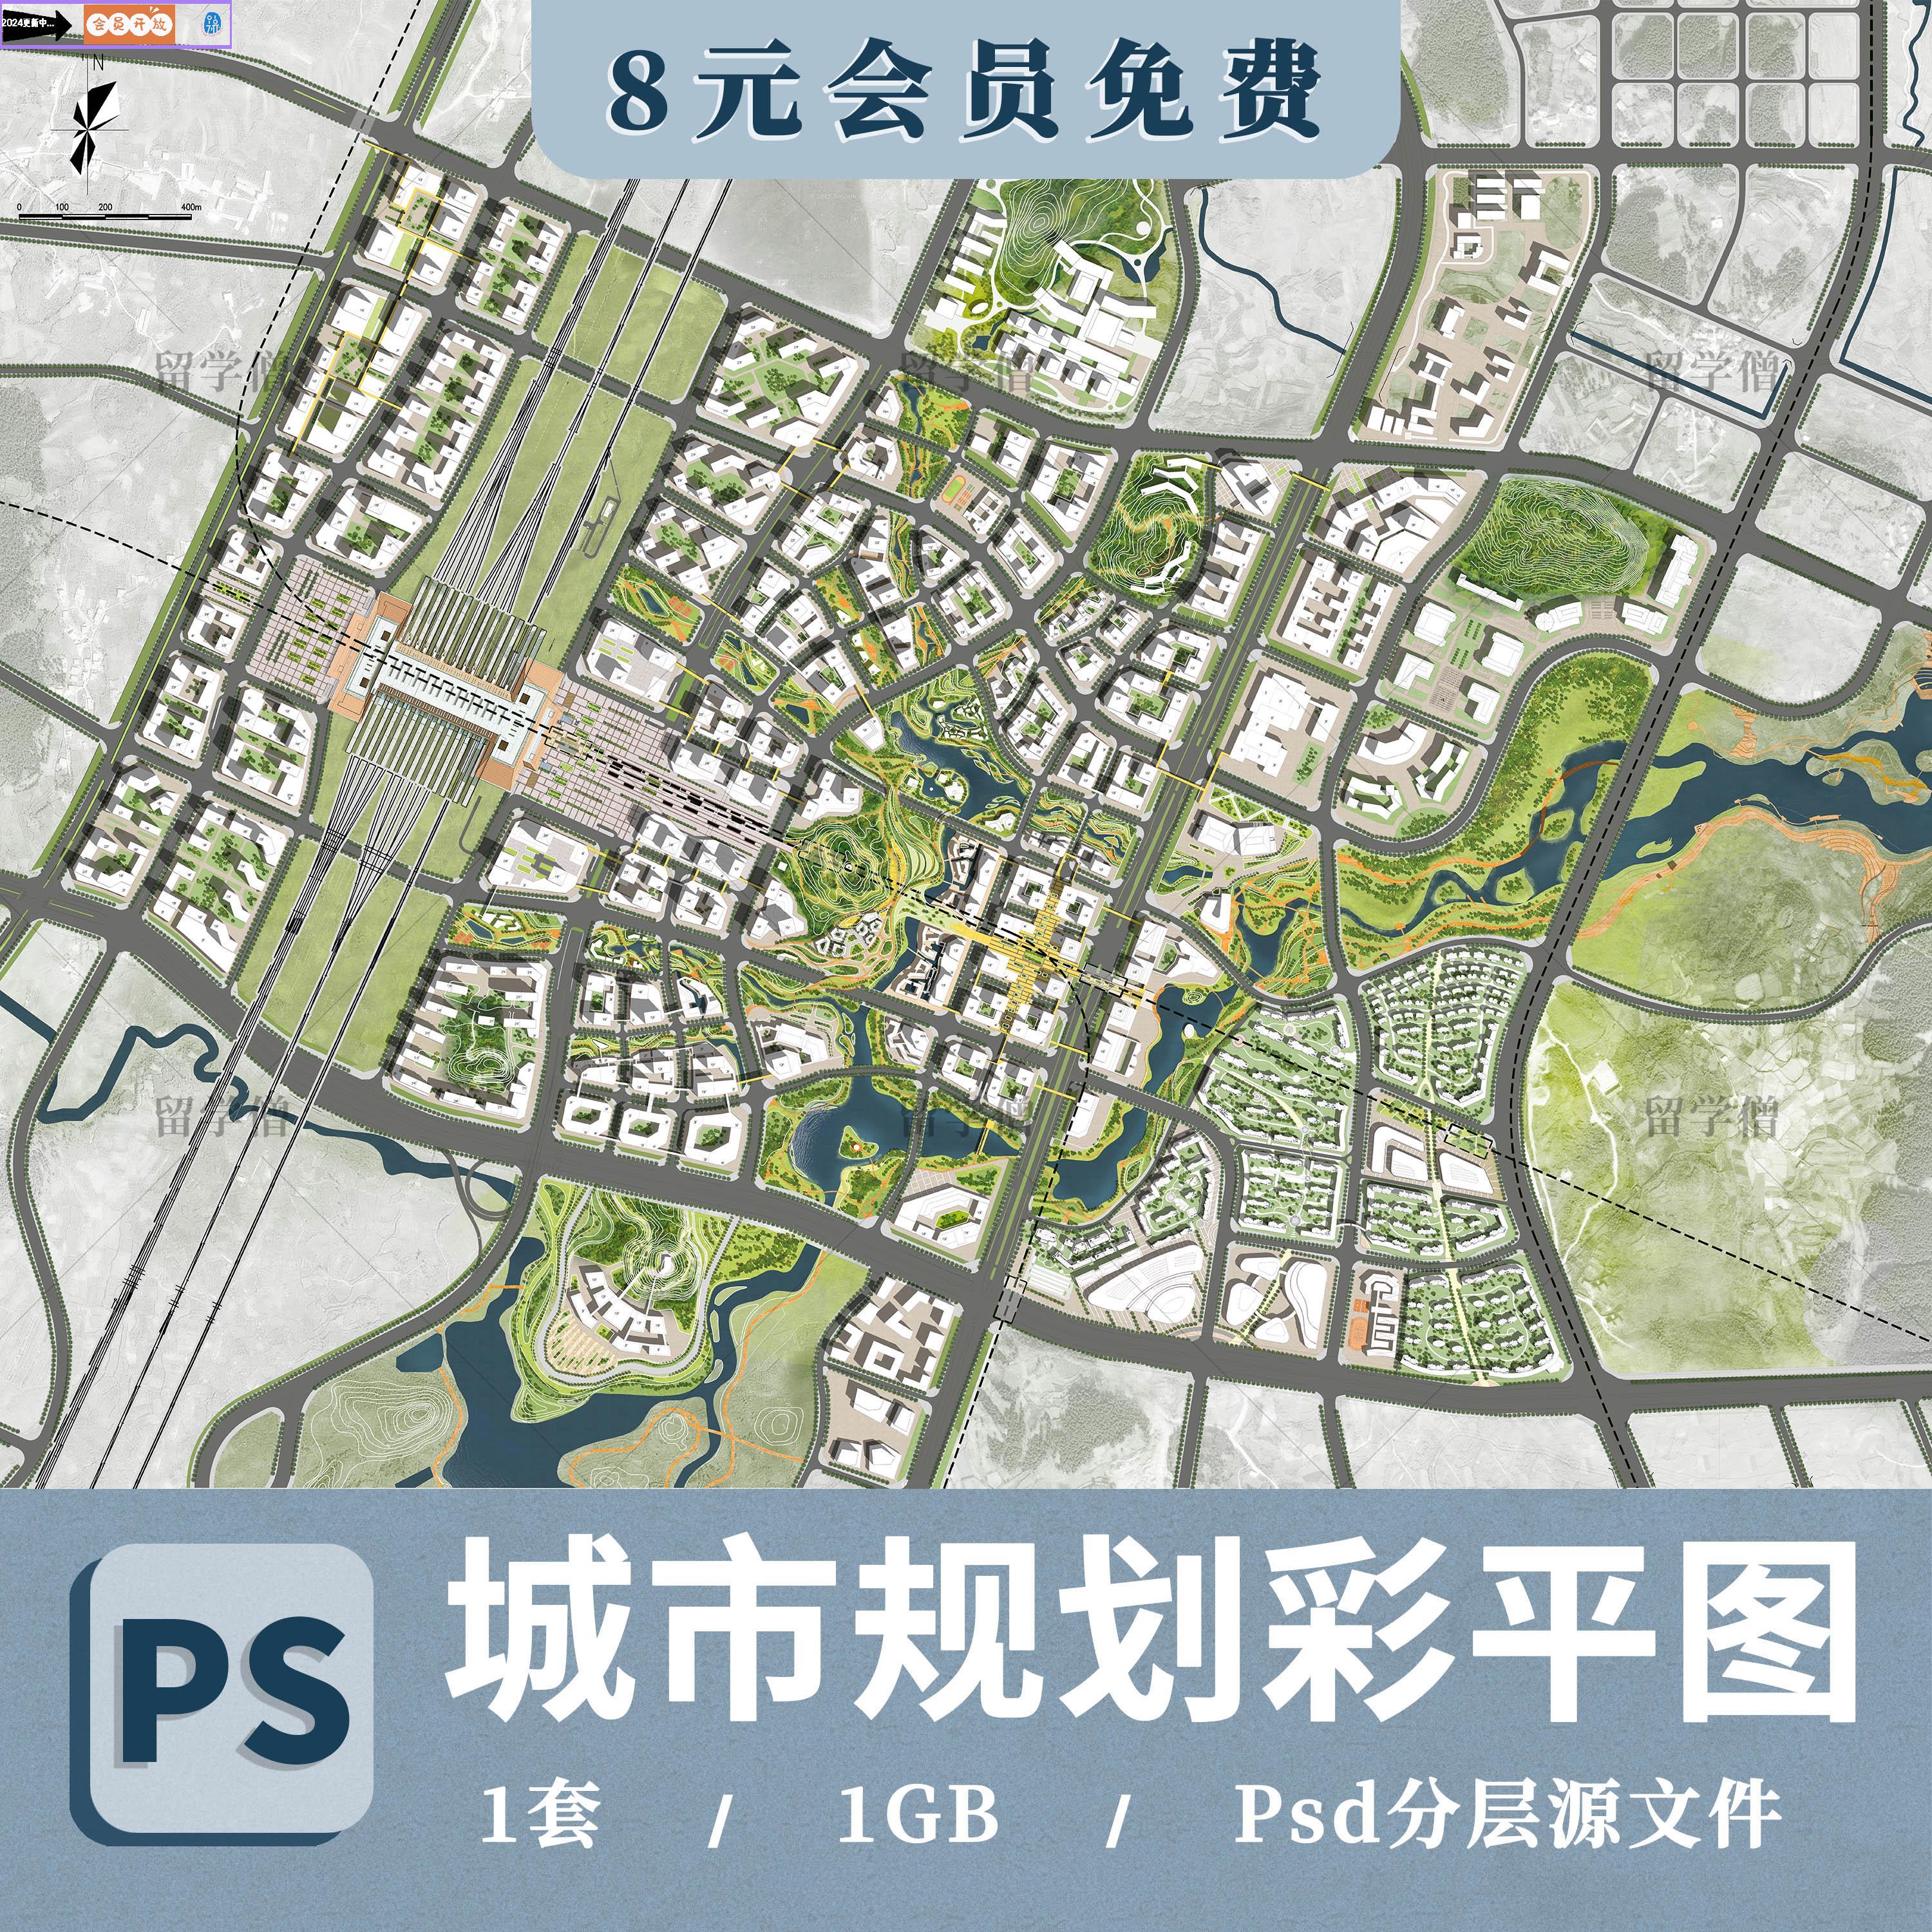 ps城市规划彩色总平面图案例景观设计彩平图植物PSD分层后期素材